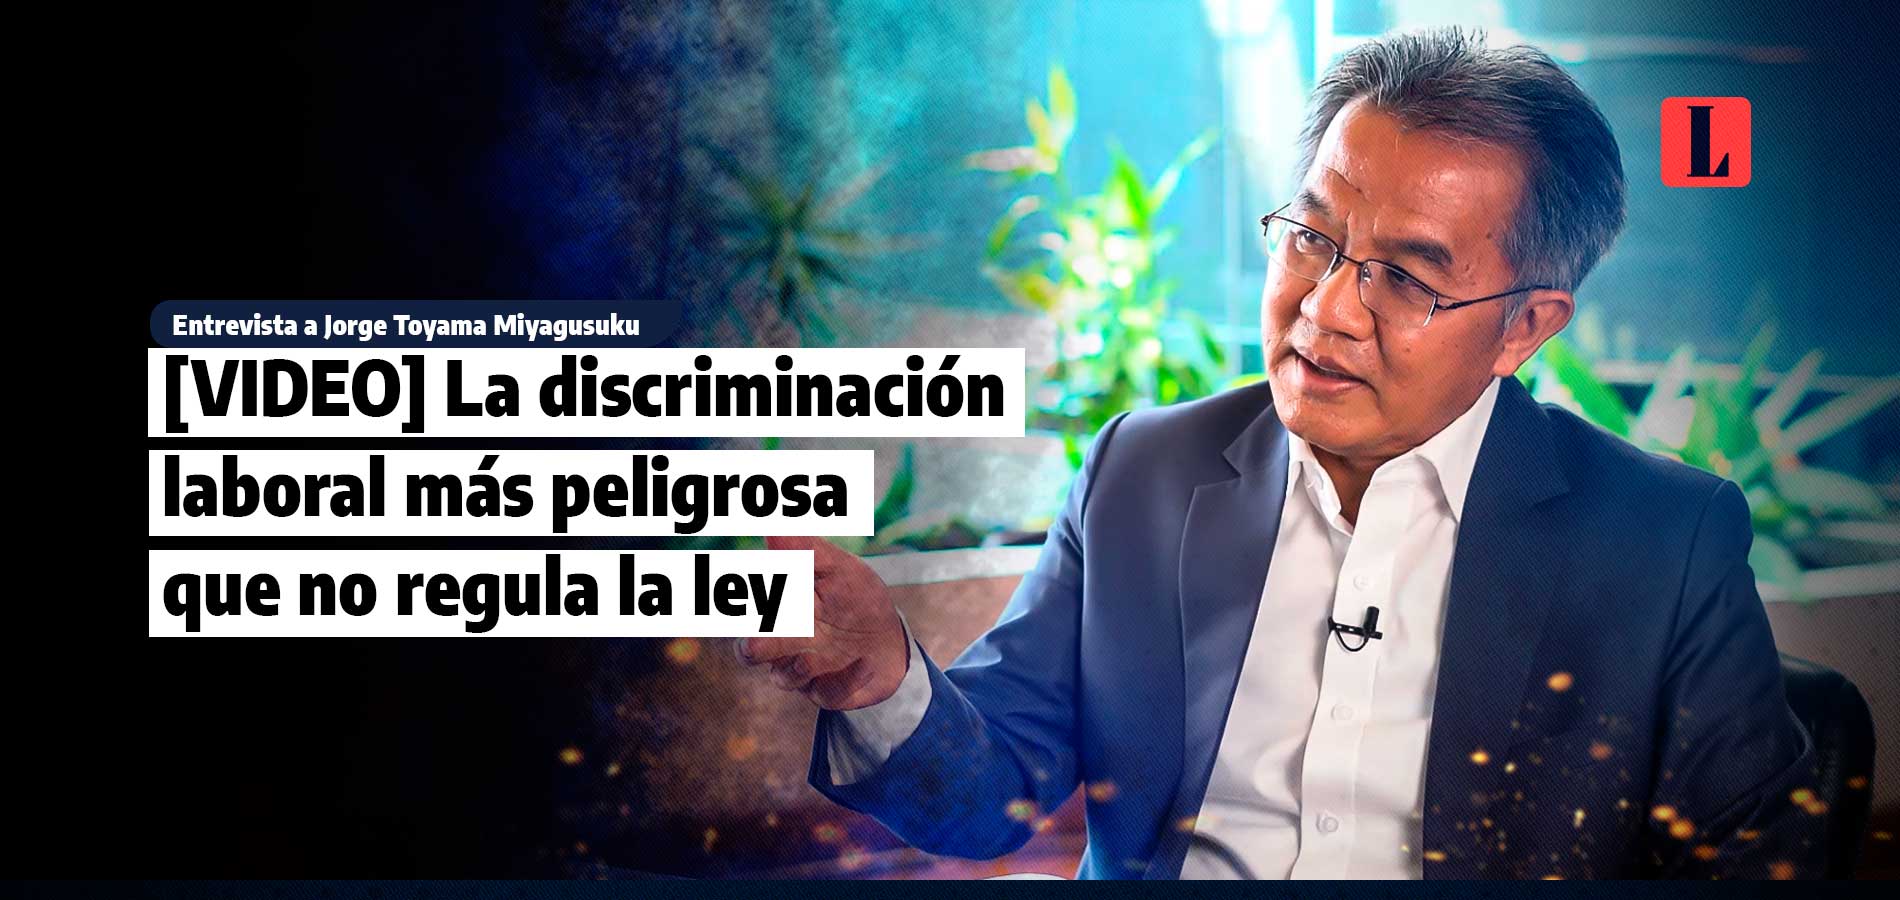 La discriminación laboral más peligrosa que no regula la ley, por Jorge Toyama